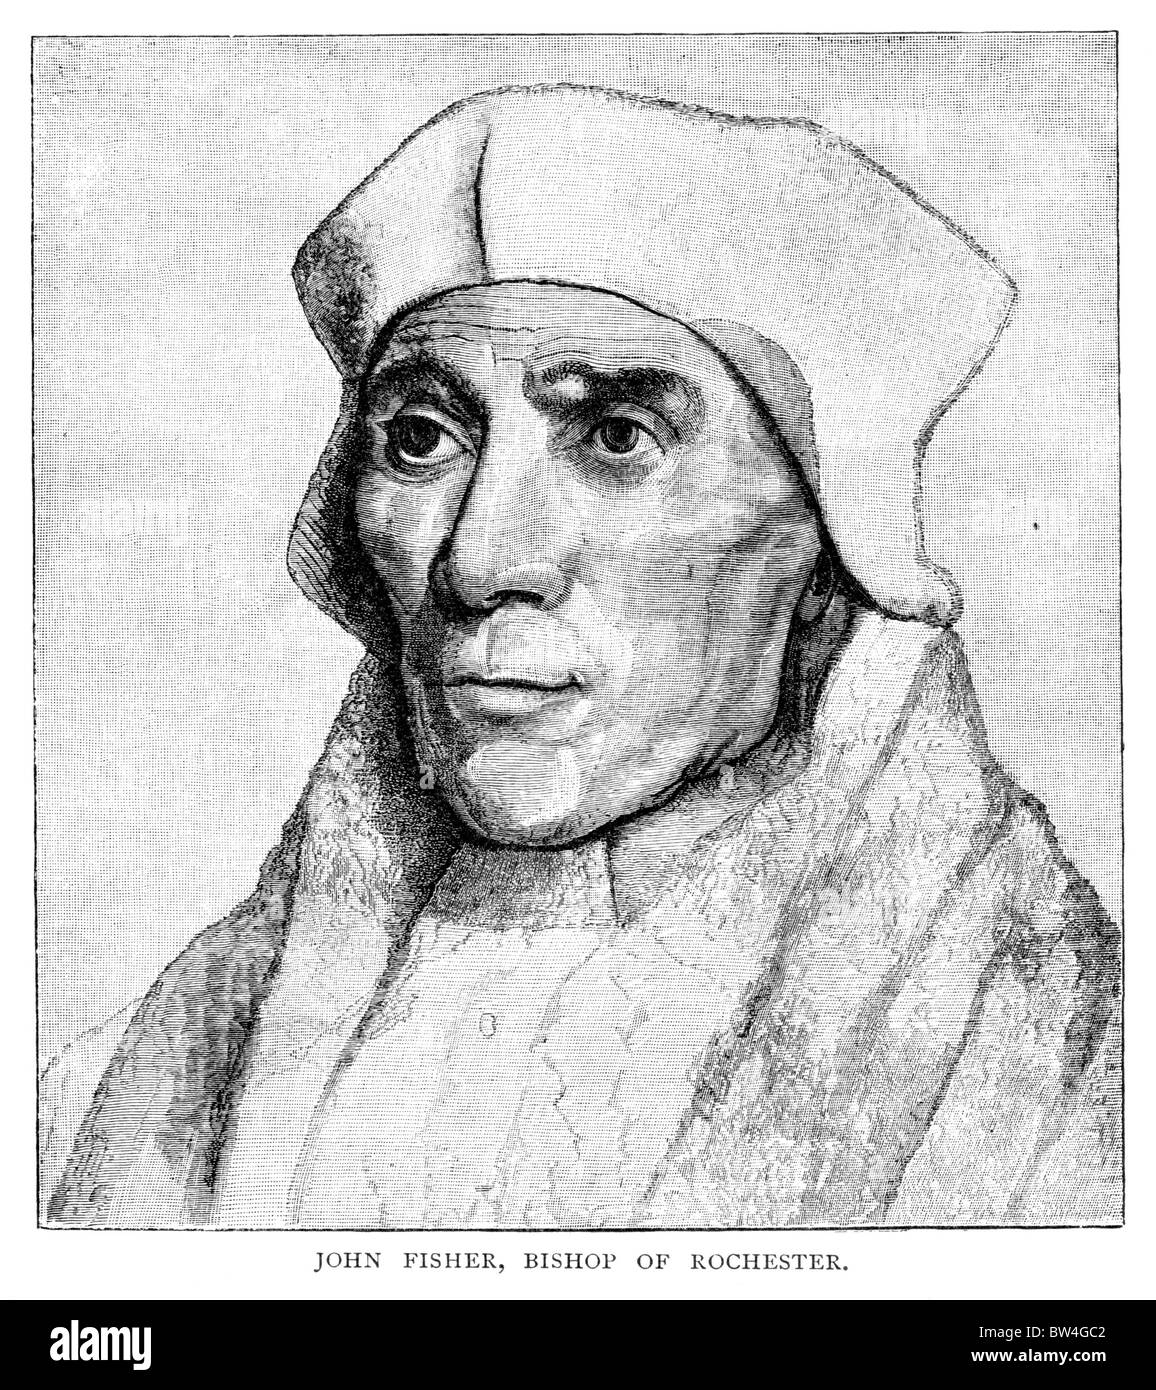 El cardenal John Fisher, obispo de Rochester, santa y mártir; ilustración en blanco y negro de un dibujo de Holbein Foto de stock